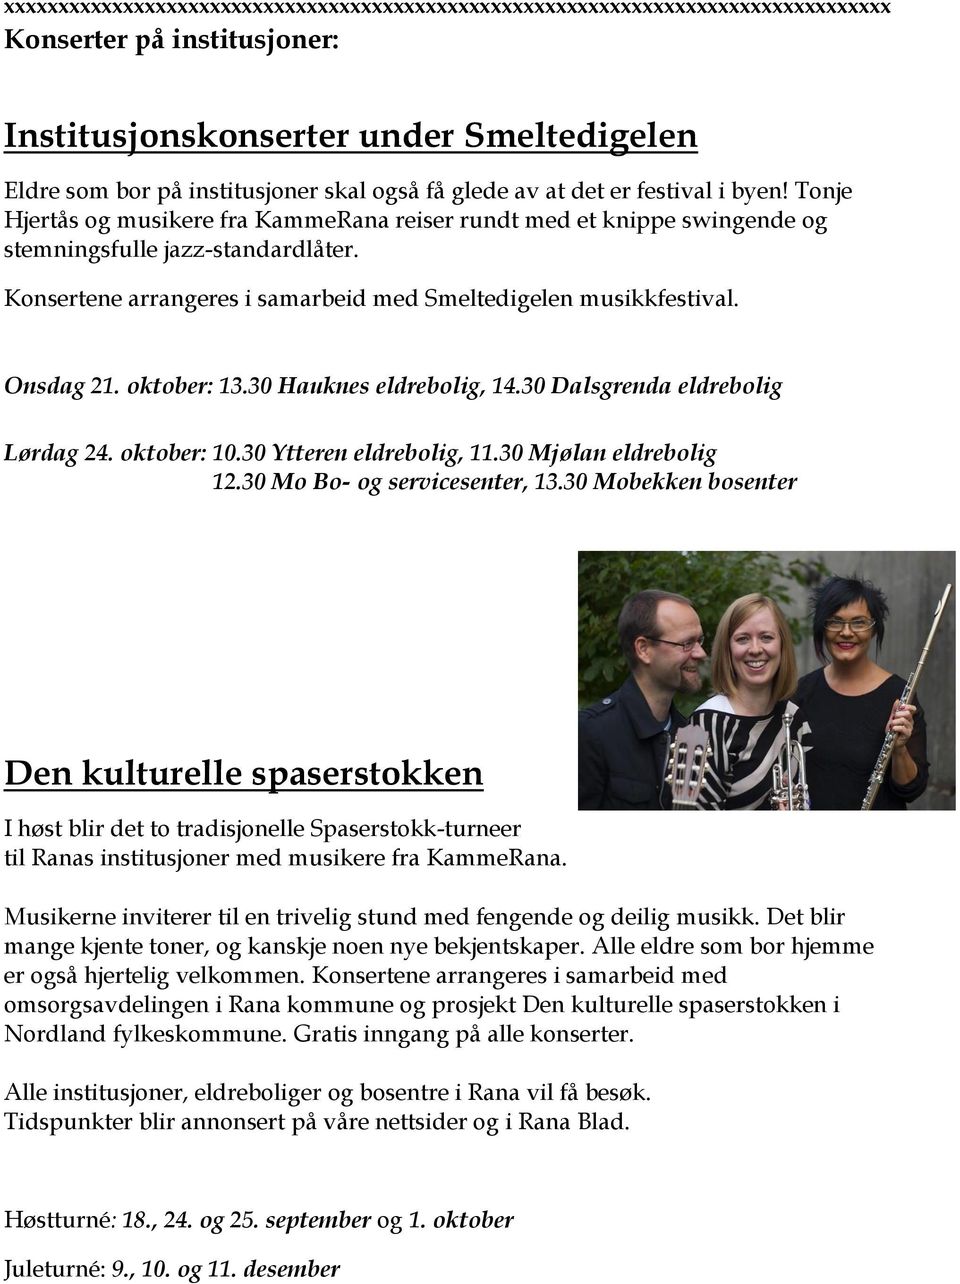 Konsertene arrangeres i samarbeid med Smeltedigelen musikkfestival. Onsdag 21. oktober: 13.30 Hauknes eldrebolig, 14.30 Dalsgrenda eldrebolig Lørdag 24. oktober: 10.30 Ytteren eldrebolig, 11.